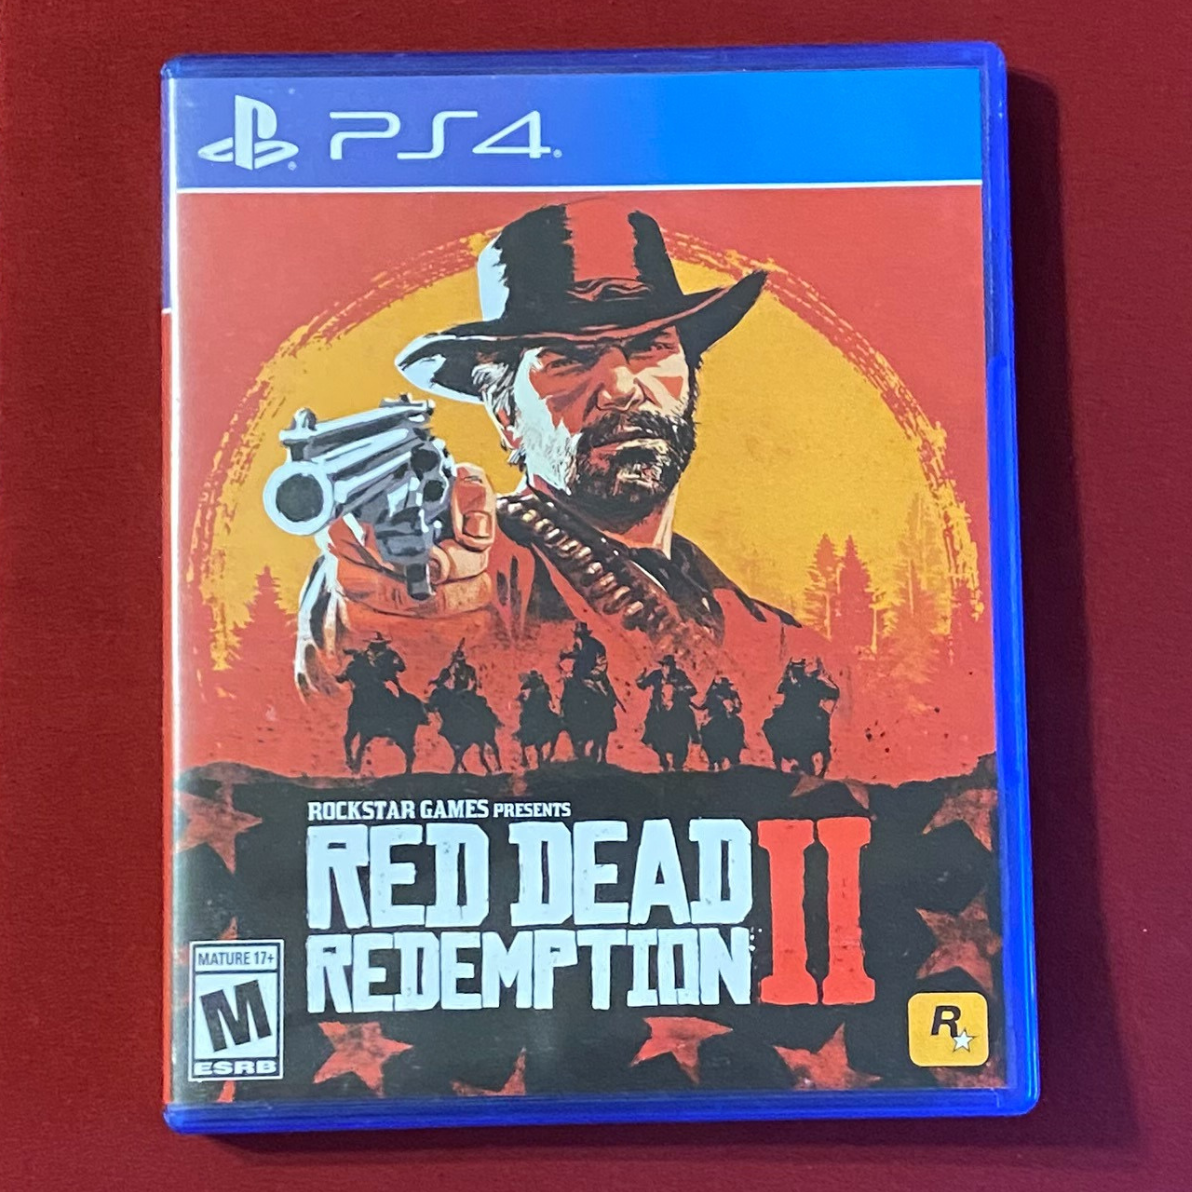 Red Dead Redemption, Red Dead Redemption 2, gun, video games